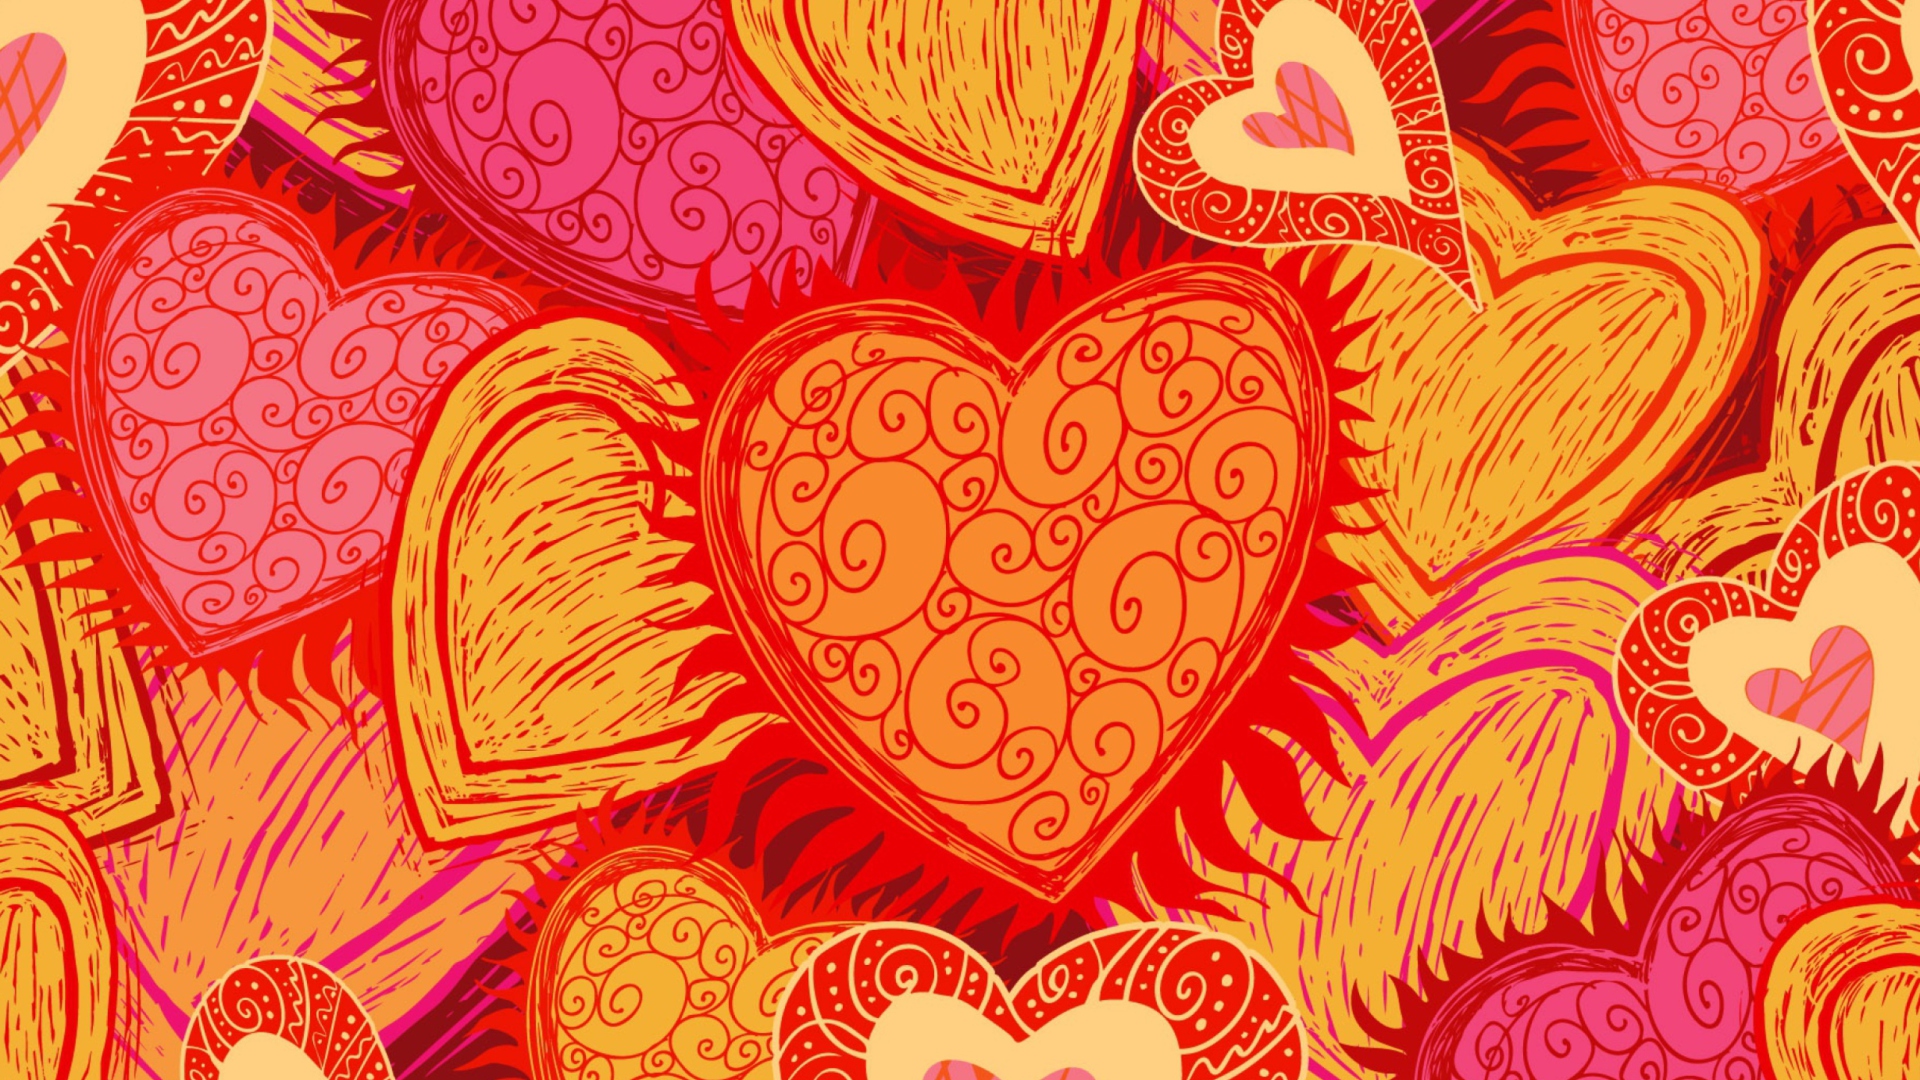 Drawn Hearts wallpaper 1920x1080